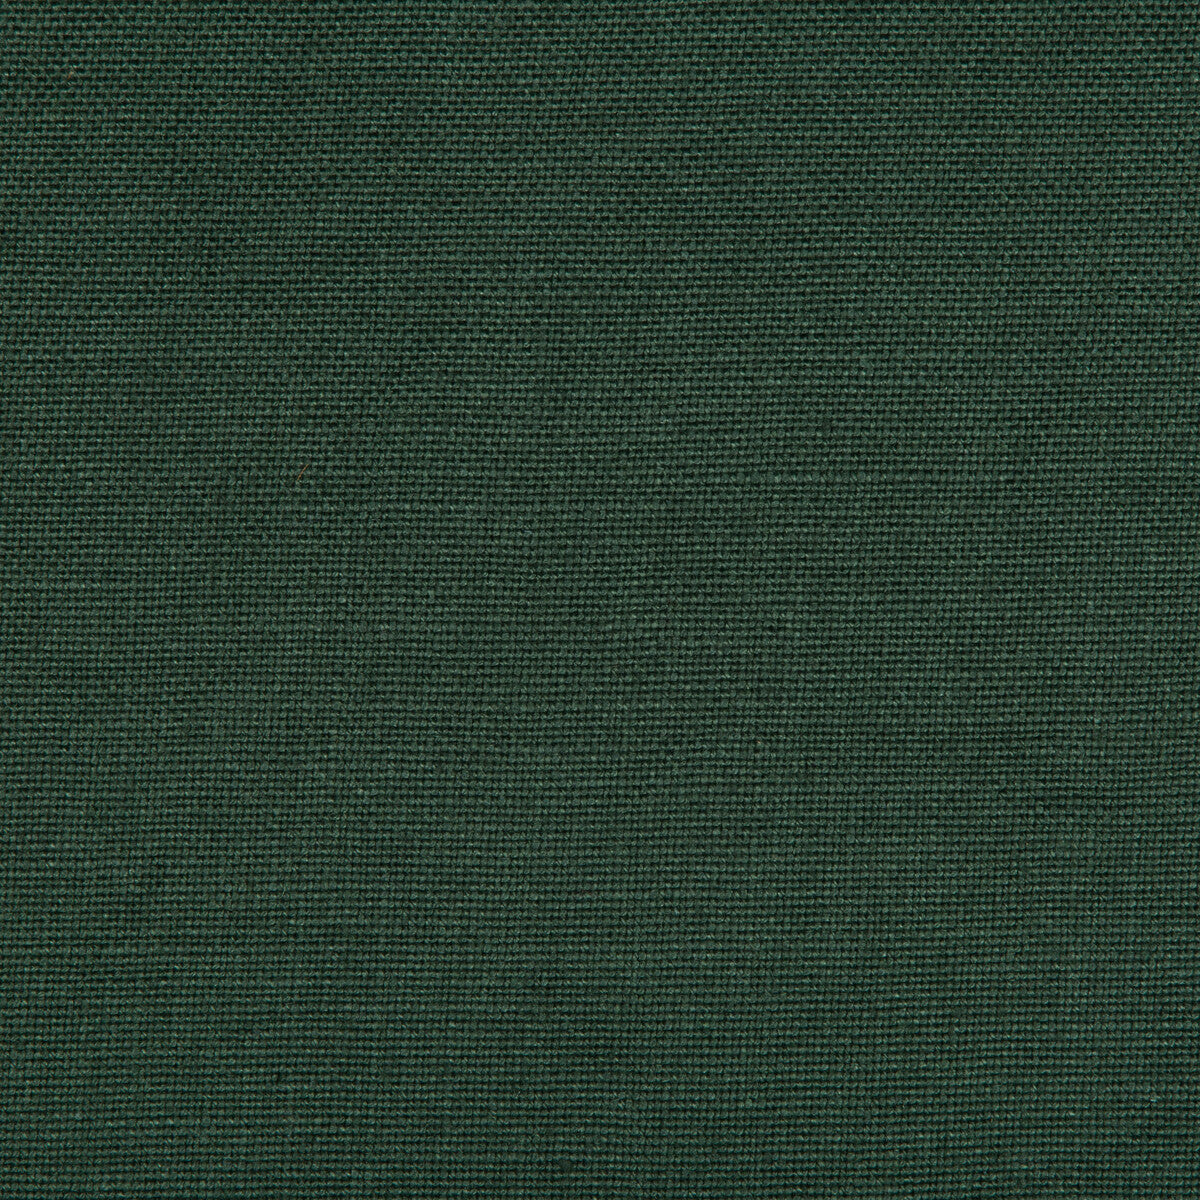 Kravet Basics fabric in 35342-30 color - pattern 35342.30.0 - by Kravet Basics